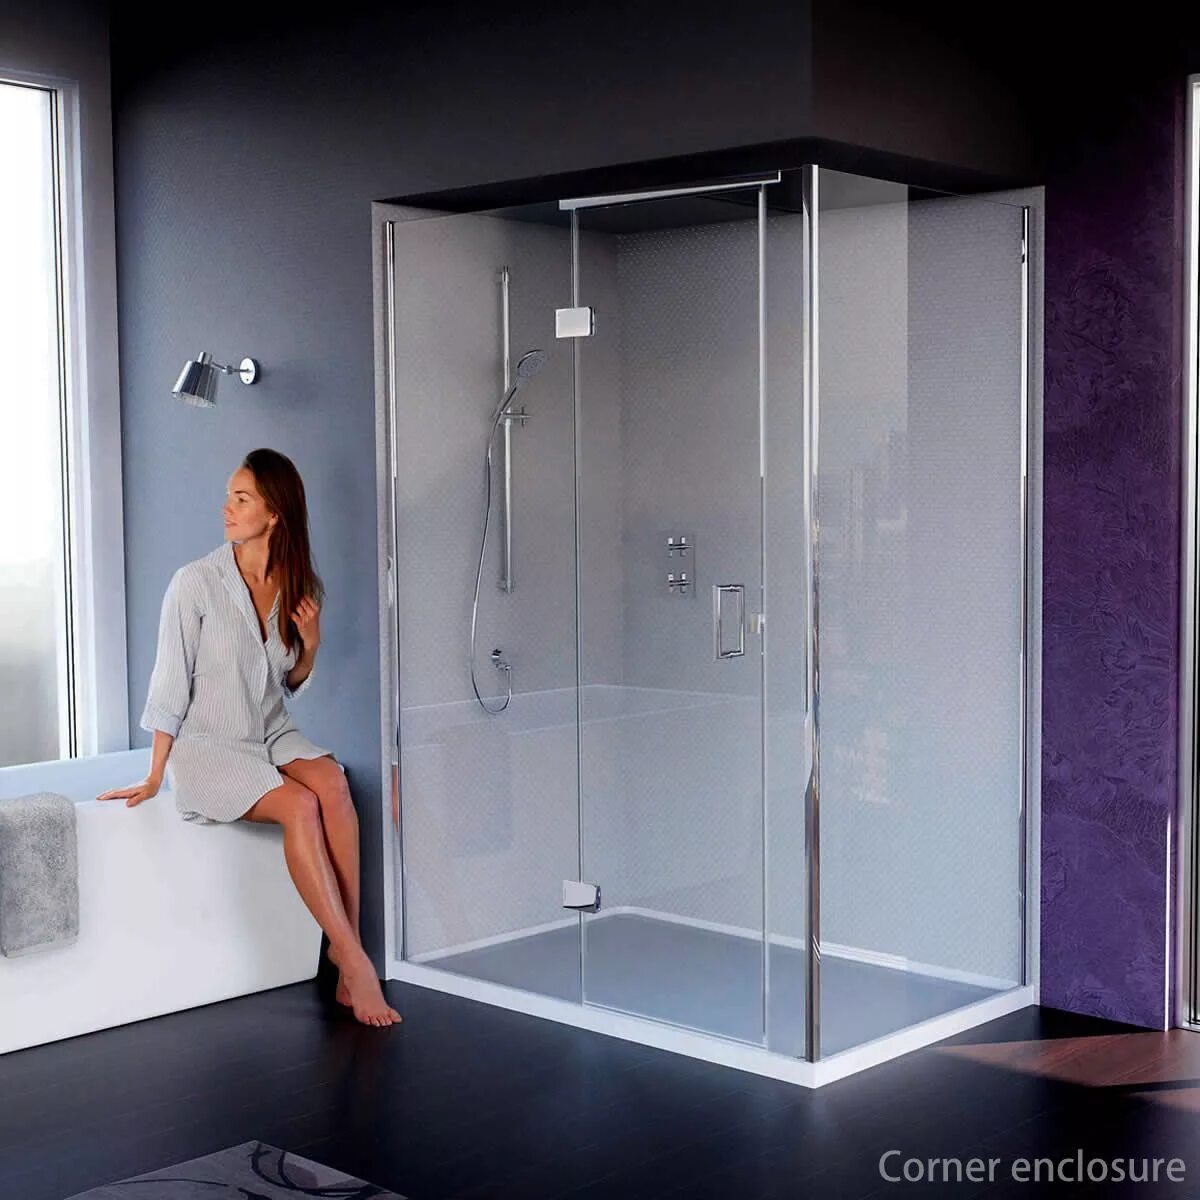 Душевая кабина Shower Glass. Shower Enclosure душевая кабина. Душевая кабина Shower Glass комплект. Душевая кабина Glass 140x100. Собрать стеклянную душевую